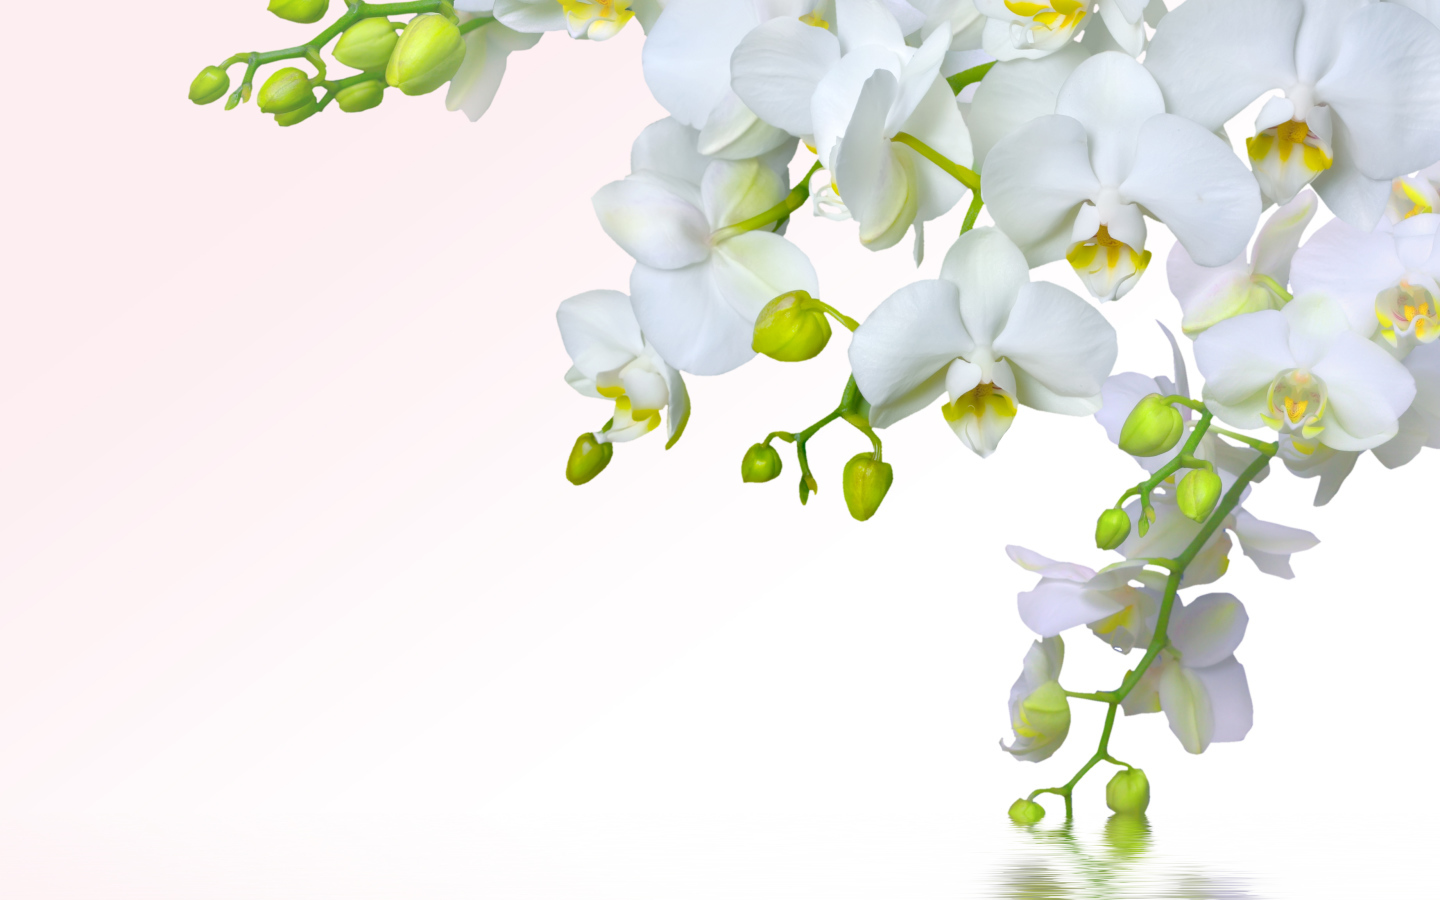 Ветка белой орхидеи на белом фоне, шаблон для открытки